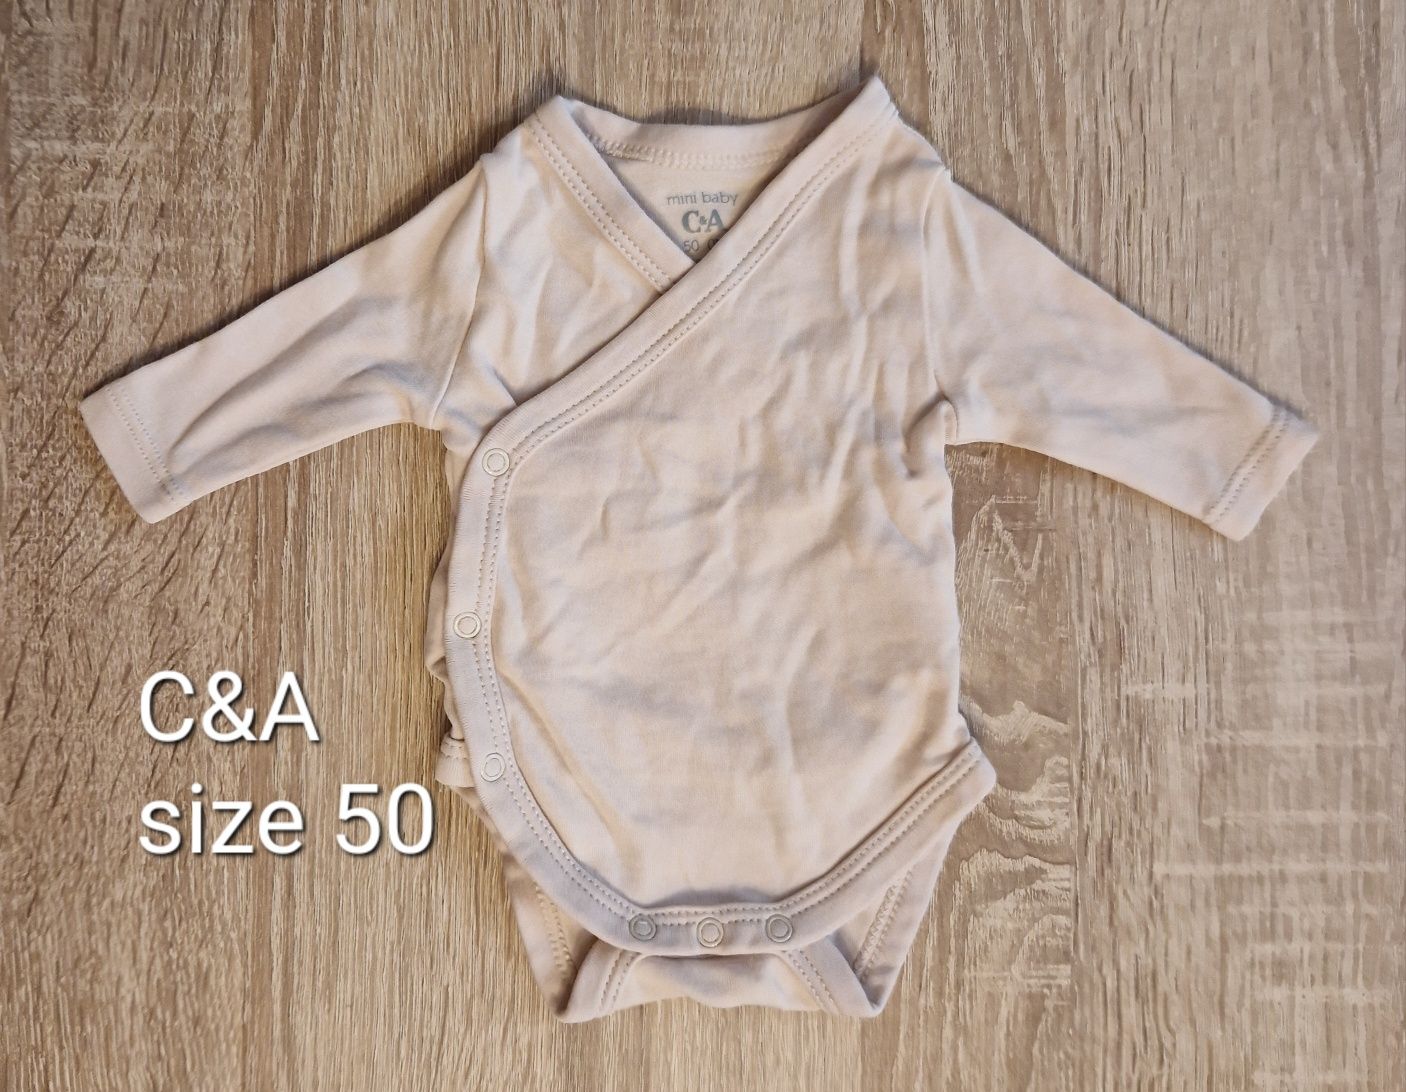 Duży zestaw ubrań dla niemowlaka 50 rozmiaru